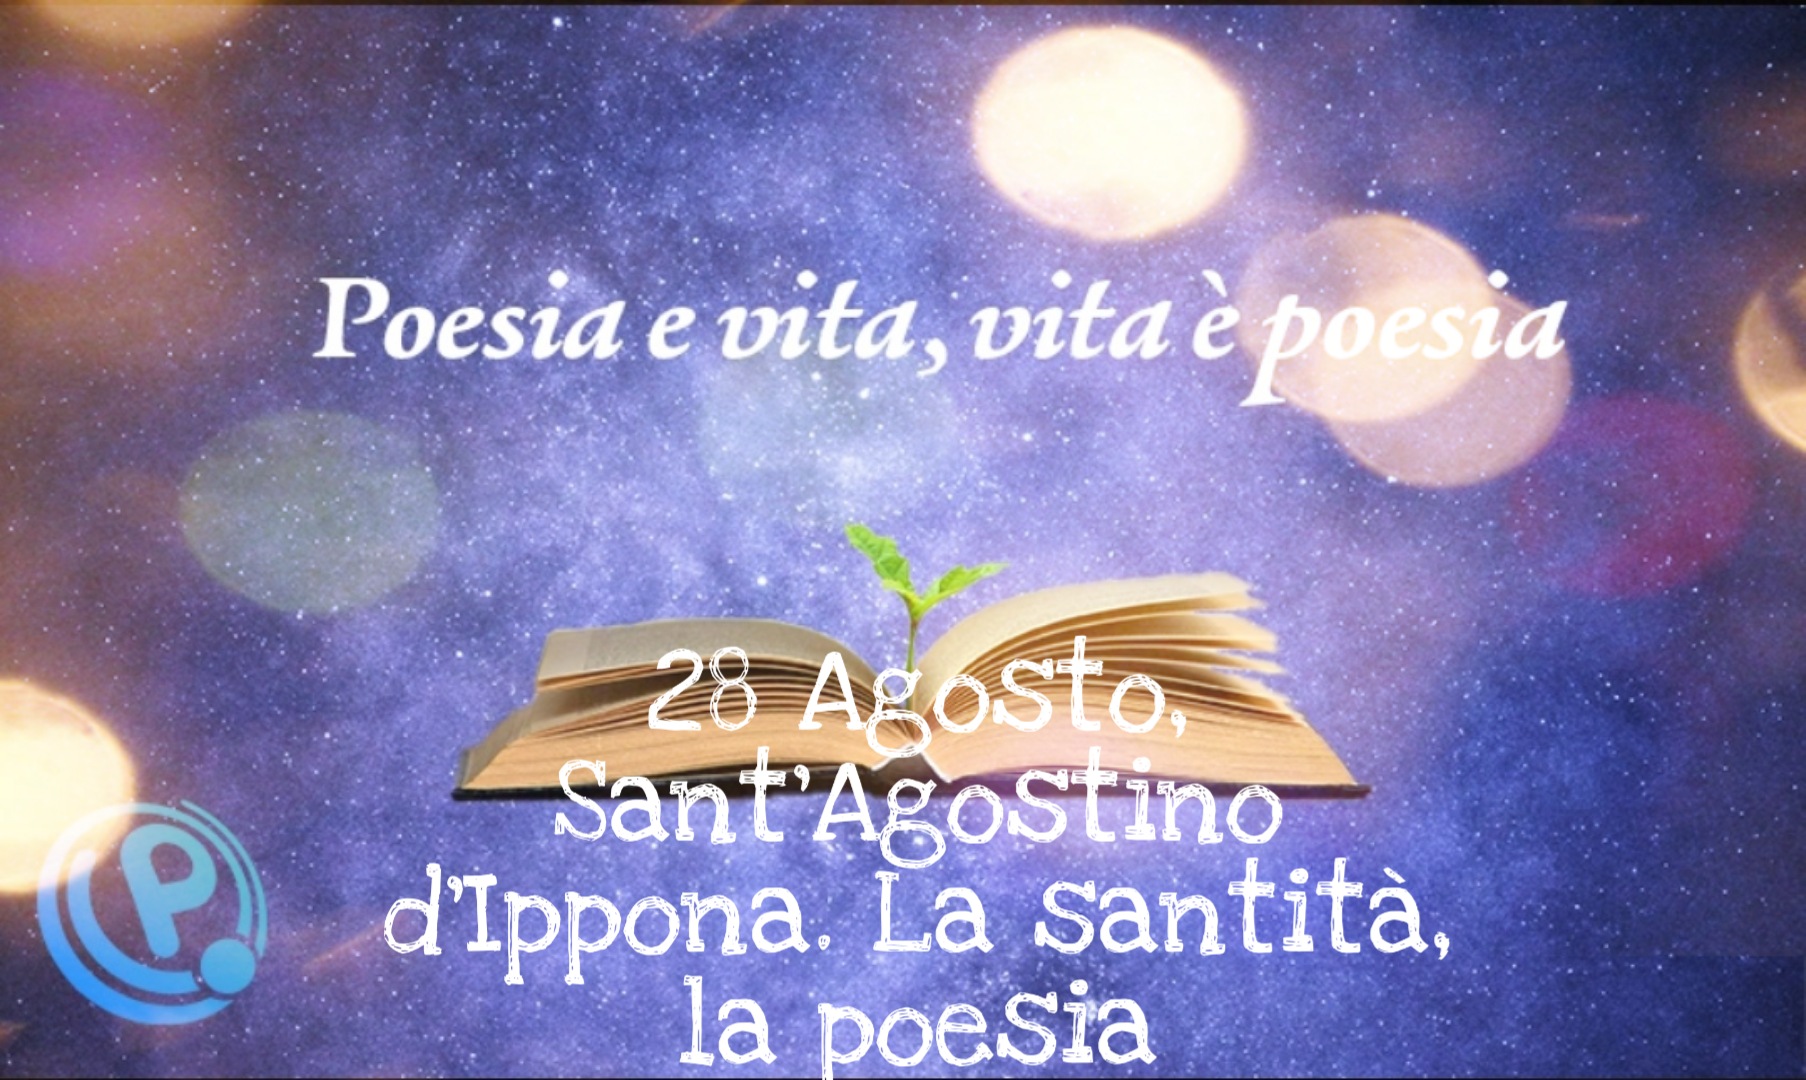 28 agosto sant'Agostino d'ippona